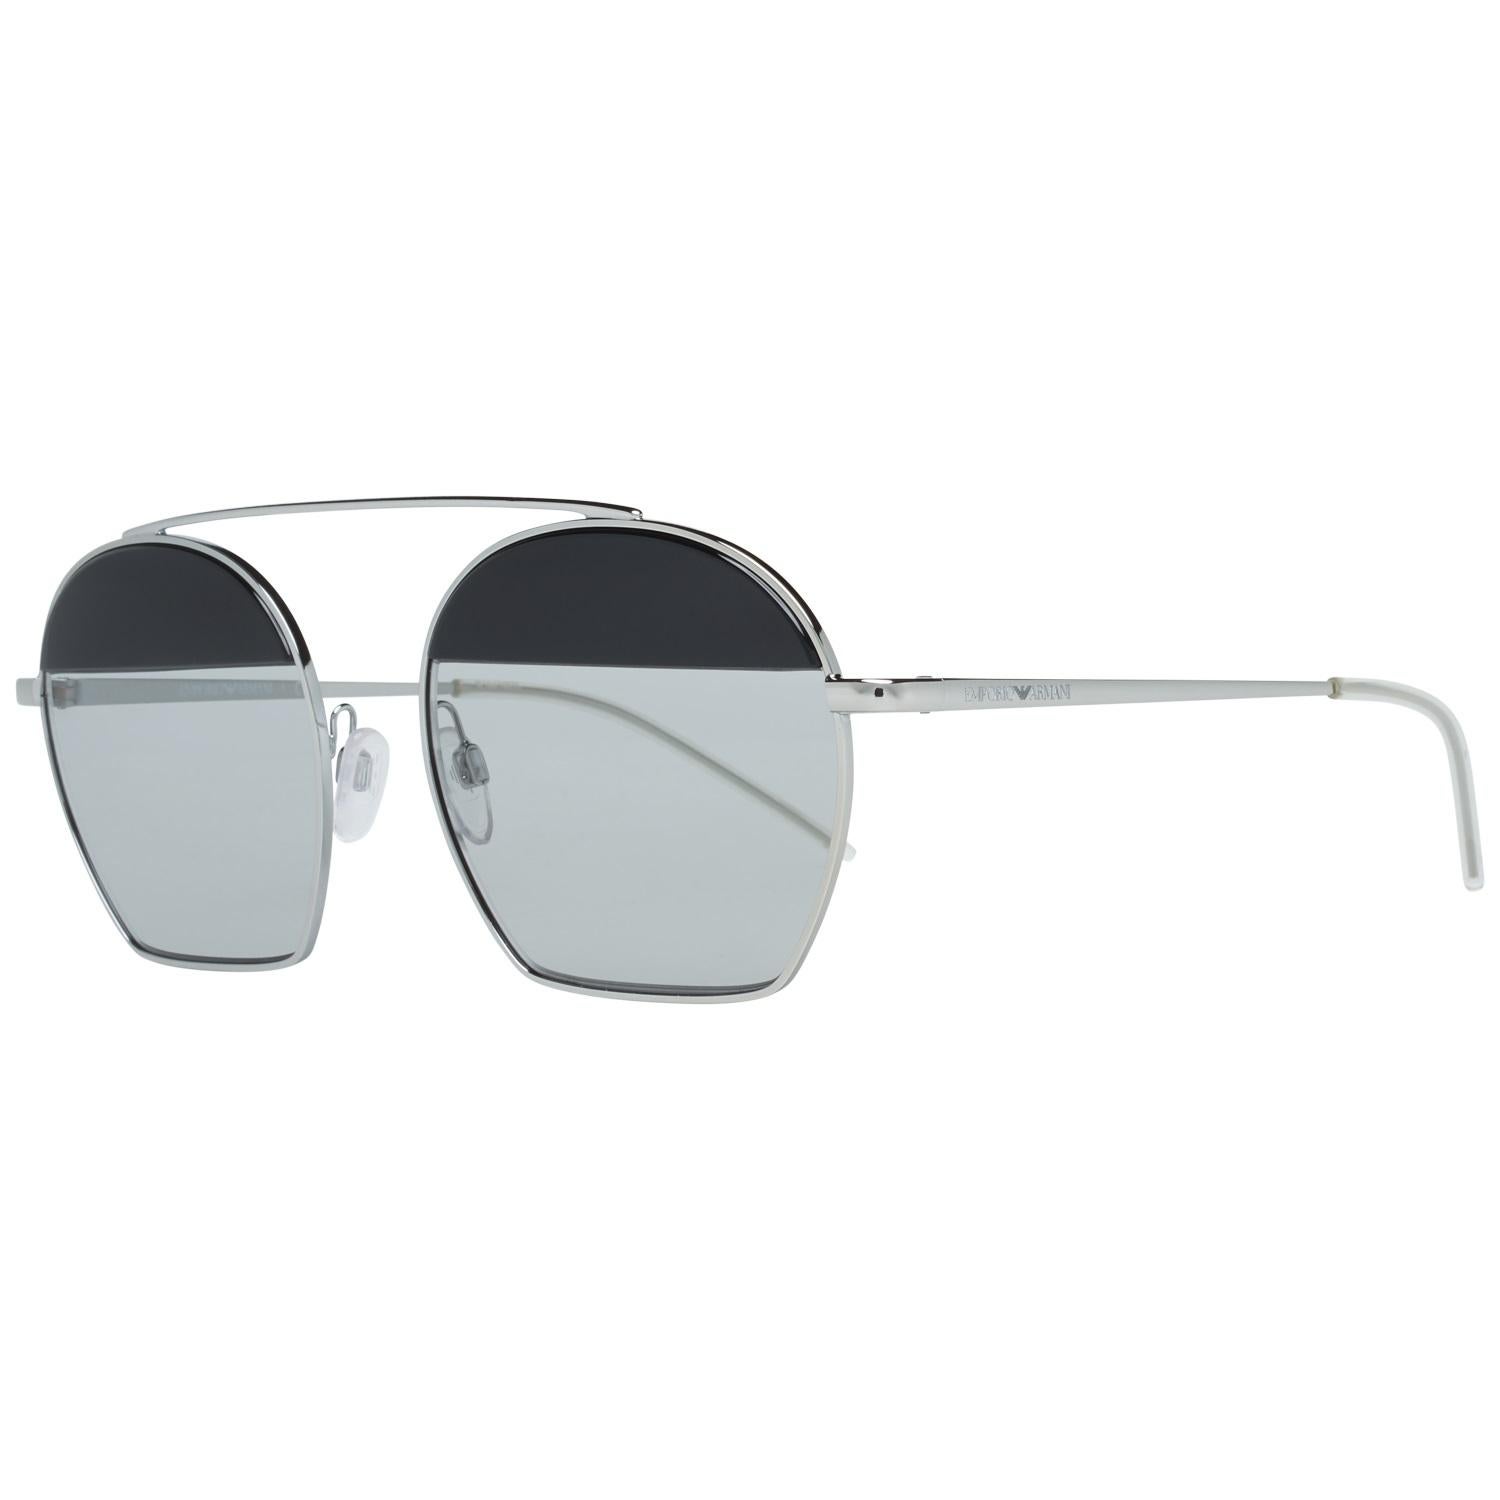 Emporio Armani Mint Unisex Silver Sunglasses EA2086 30156G56 56-19-143 mm 3